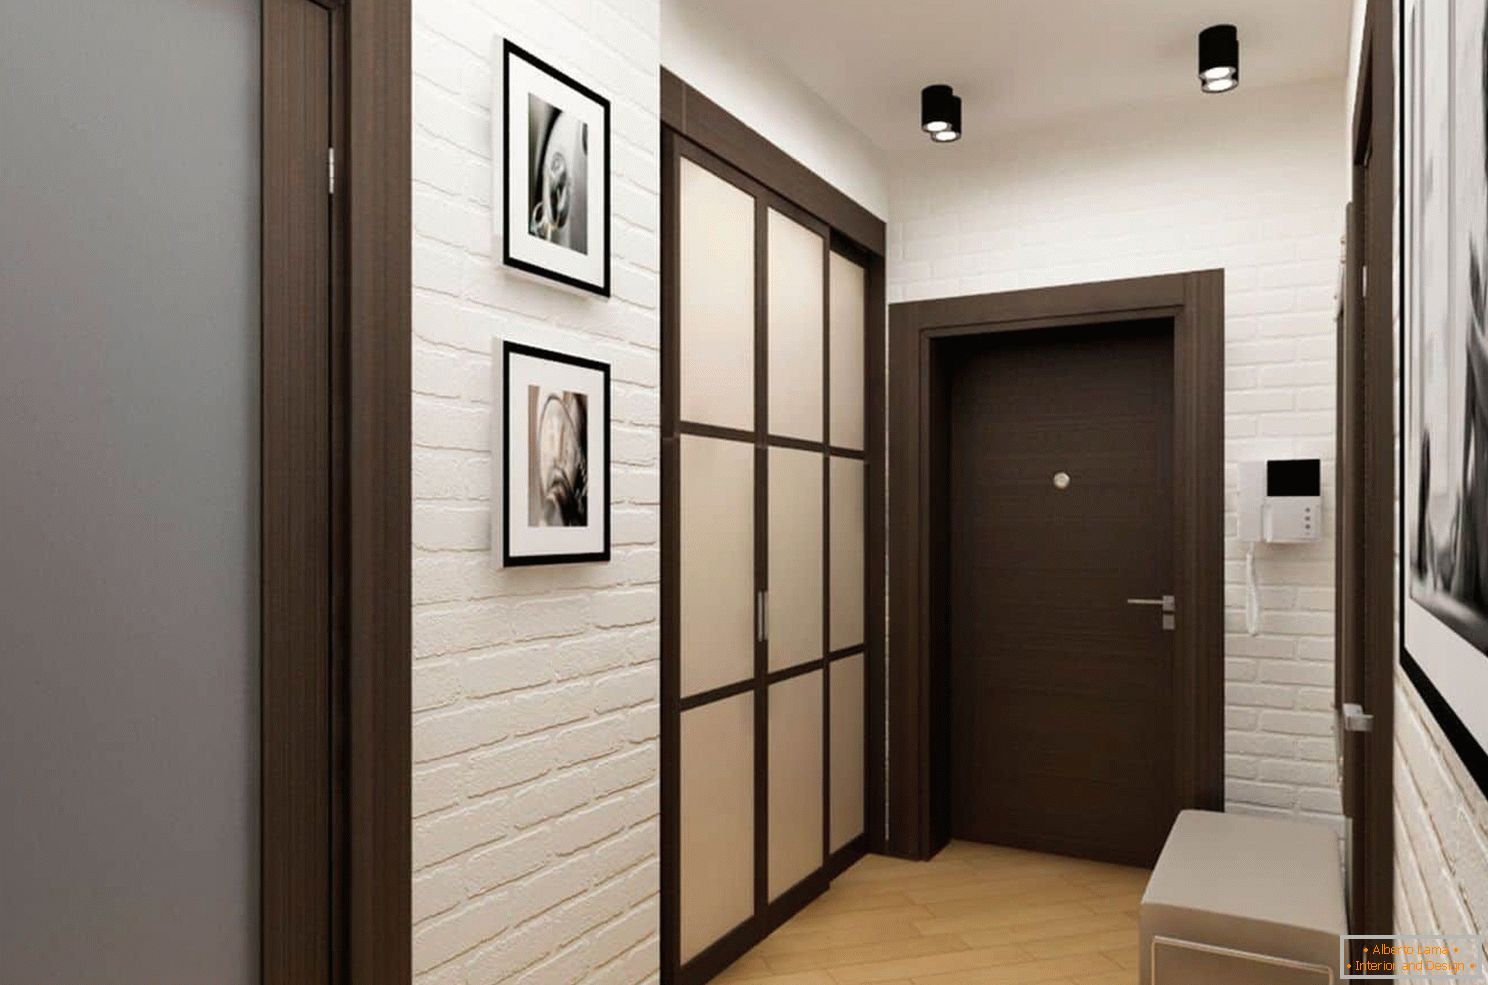 Design de interiores de um pequeno corredor com um guarda-roupa e otomano